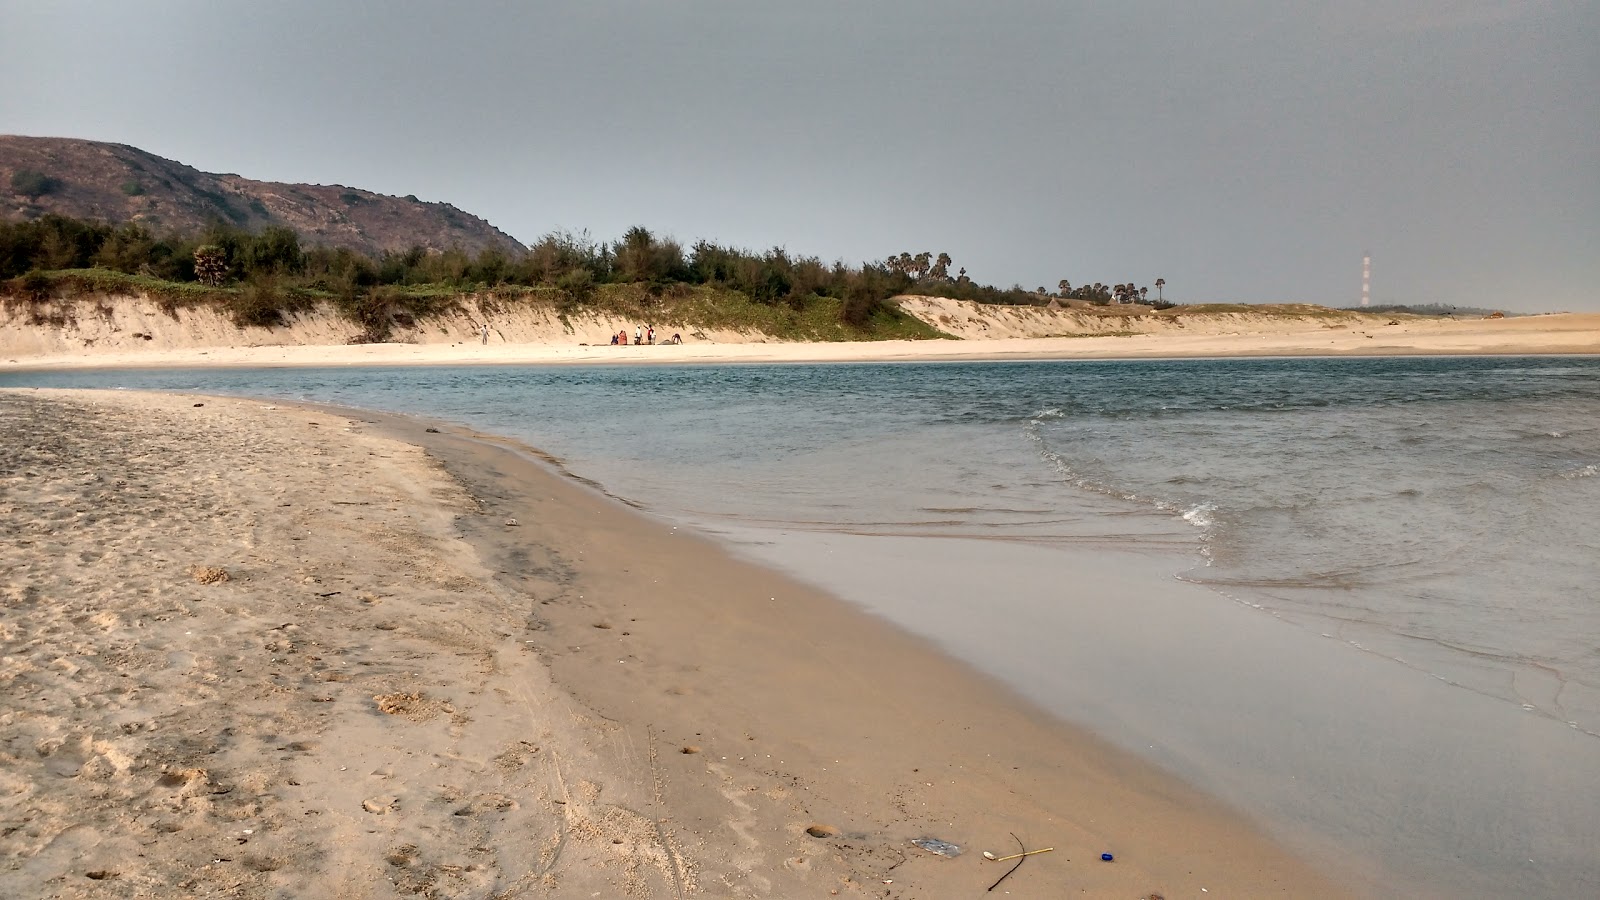 Photo de Mutyalammapalem Beach - endroit populaire parmi les connaisseurs de la détente